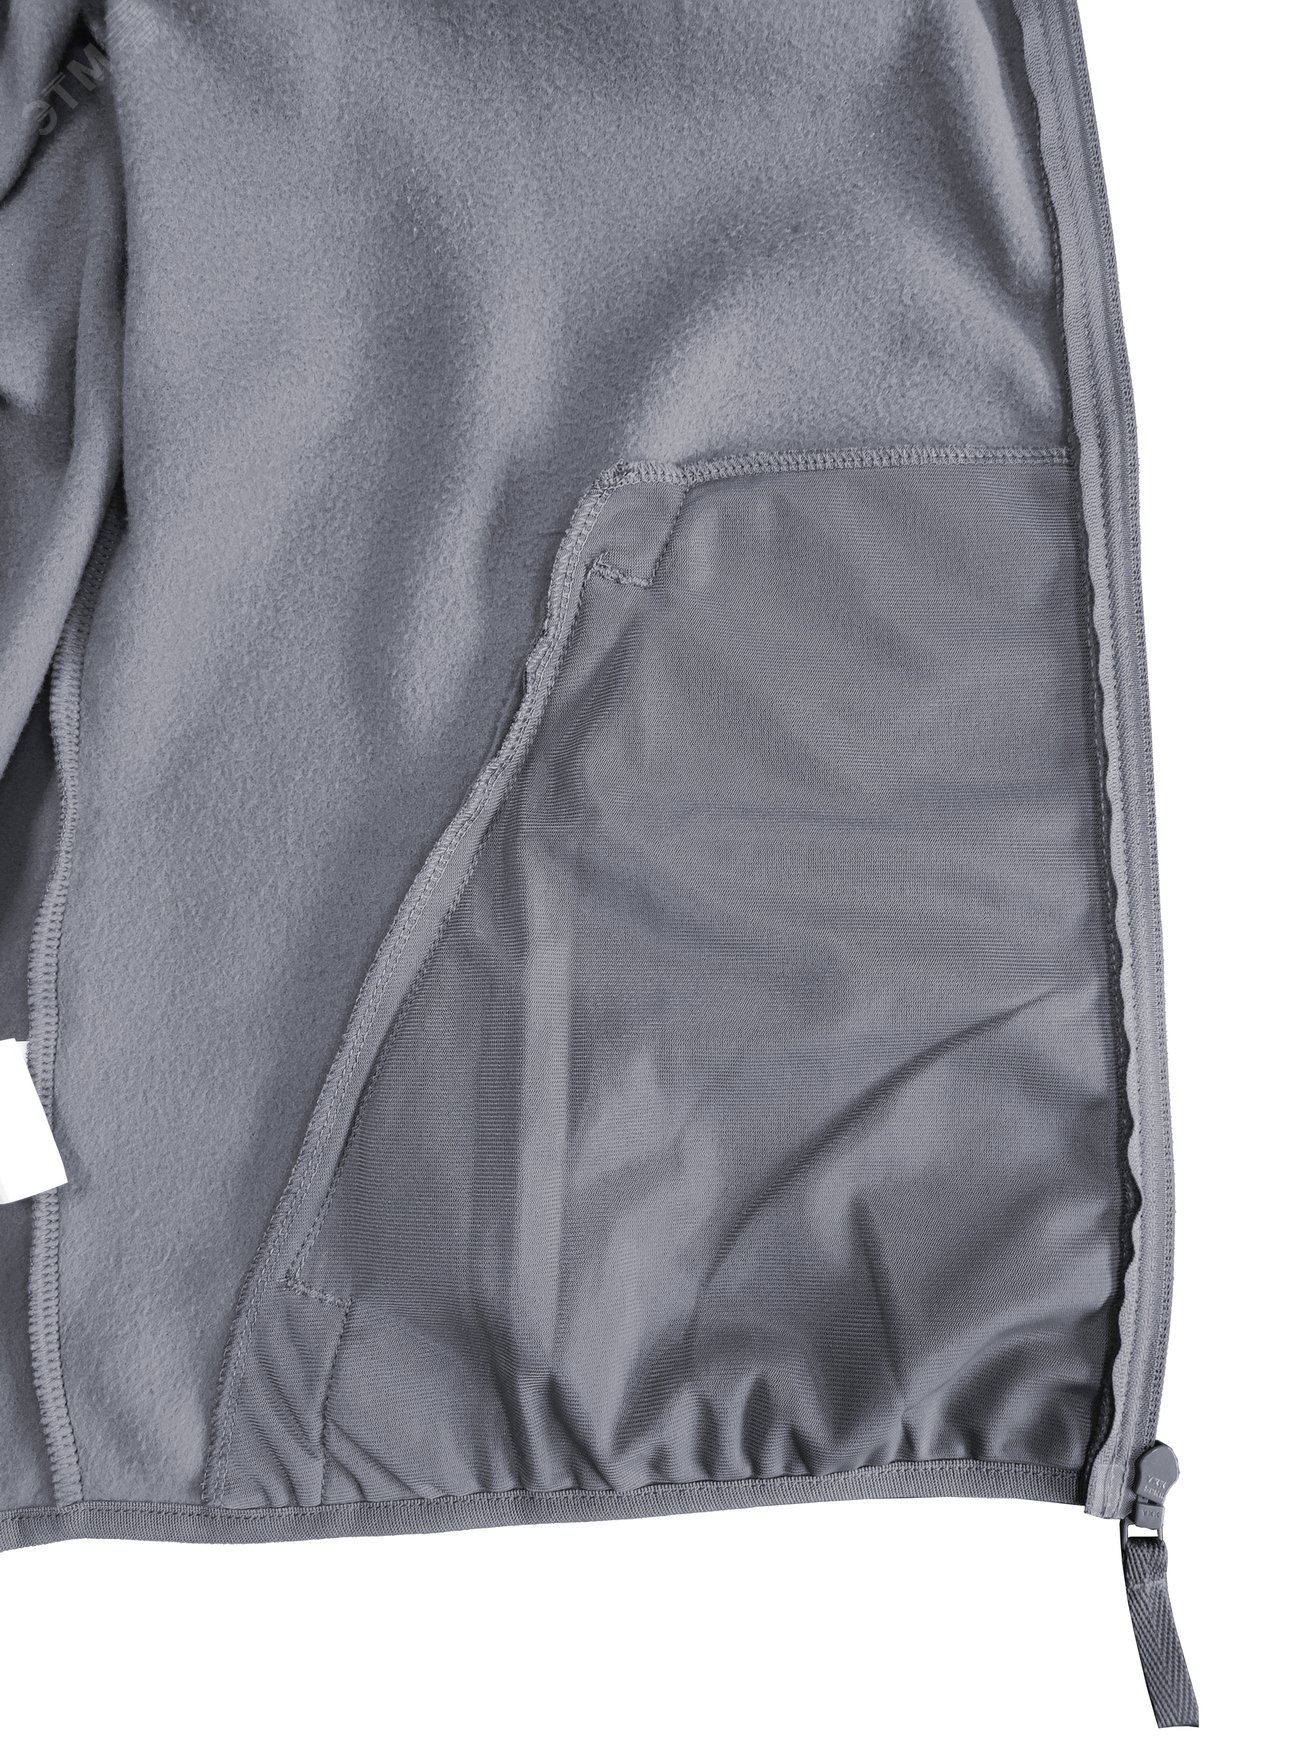 Куртка флисовая арт. JF-01 на молнии цв. серый 56-58 р. ХL 142302 Эталон-Спецодежда - превью 10